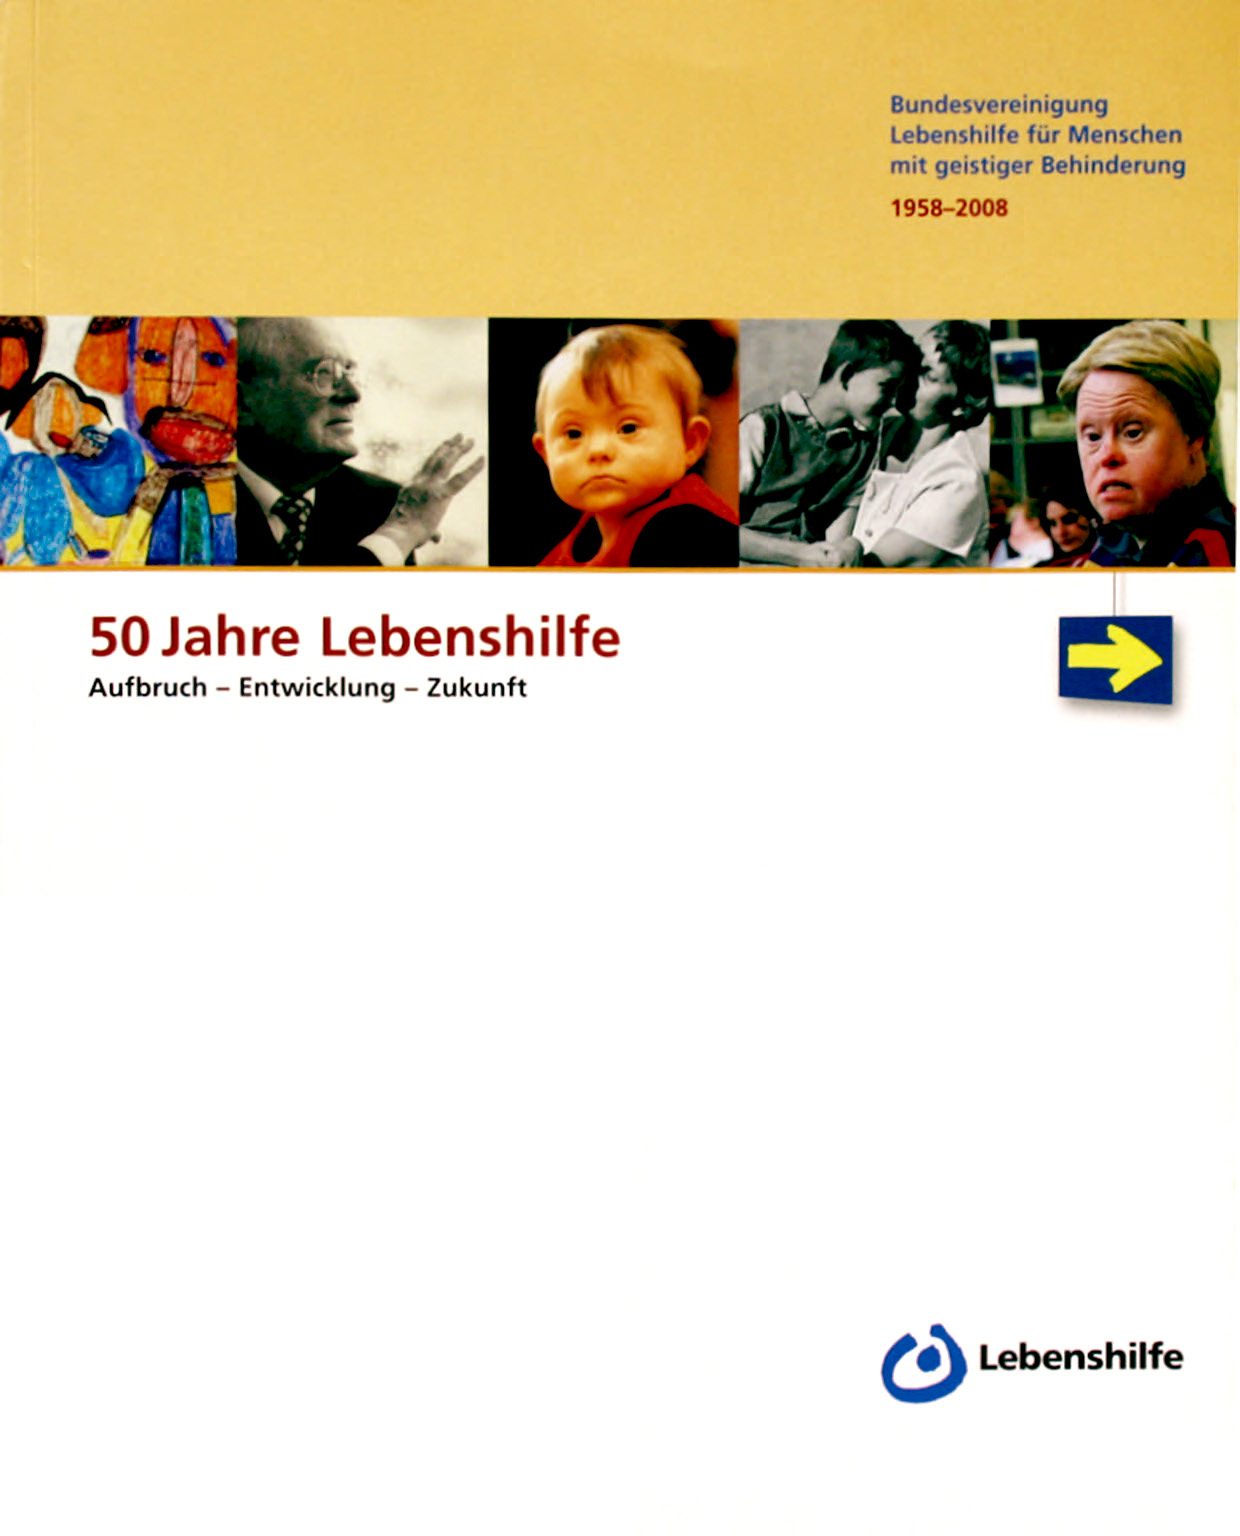 50 Jahre Bundesvereinigung Lebenshilfe, Marburg